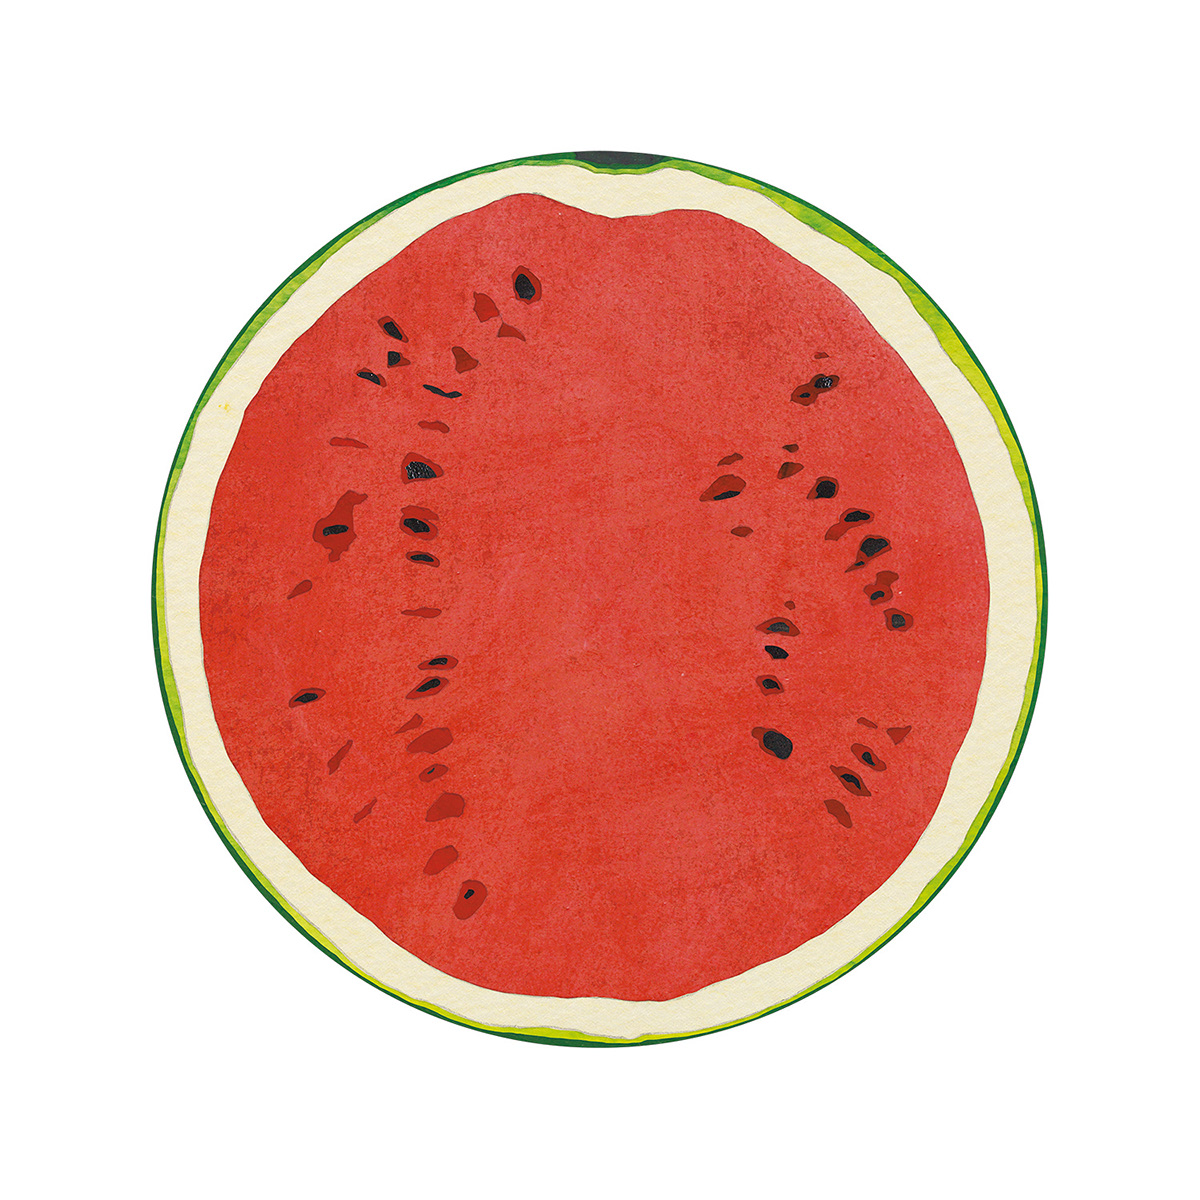 Stationery ILLUSTRATION  fruits vegetable paperable ko. machiyama apple watermelon orange strawberry